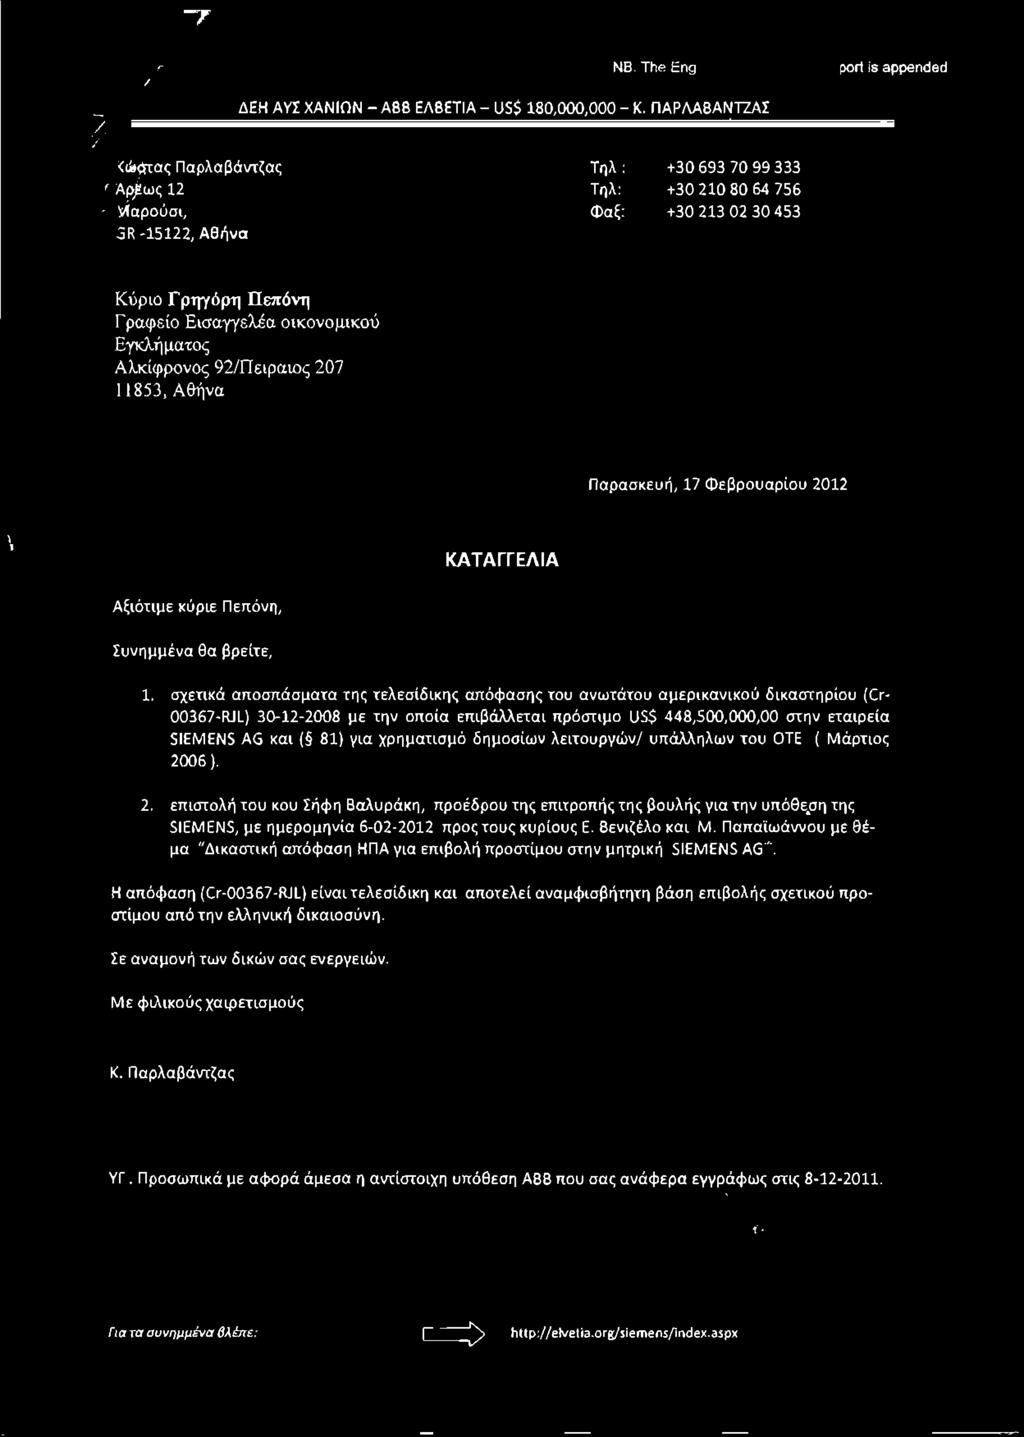 για χρηματισμό δημοσίων λειτουργών/ υπάλληλων του ΟΤΕ (Μάρτιος 2006 ). 2. επιστολή του κου ΣήΦη Βαλυράκη, προέδρου της επιτροπής της βουλής για την υπόθε.